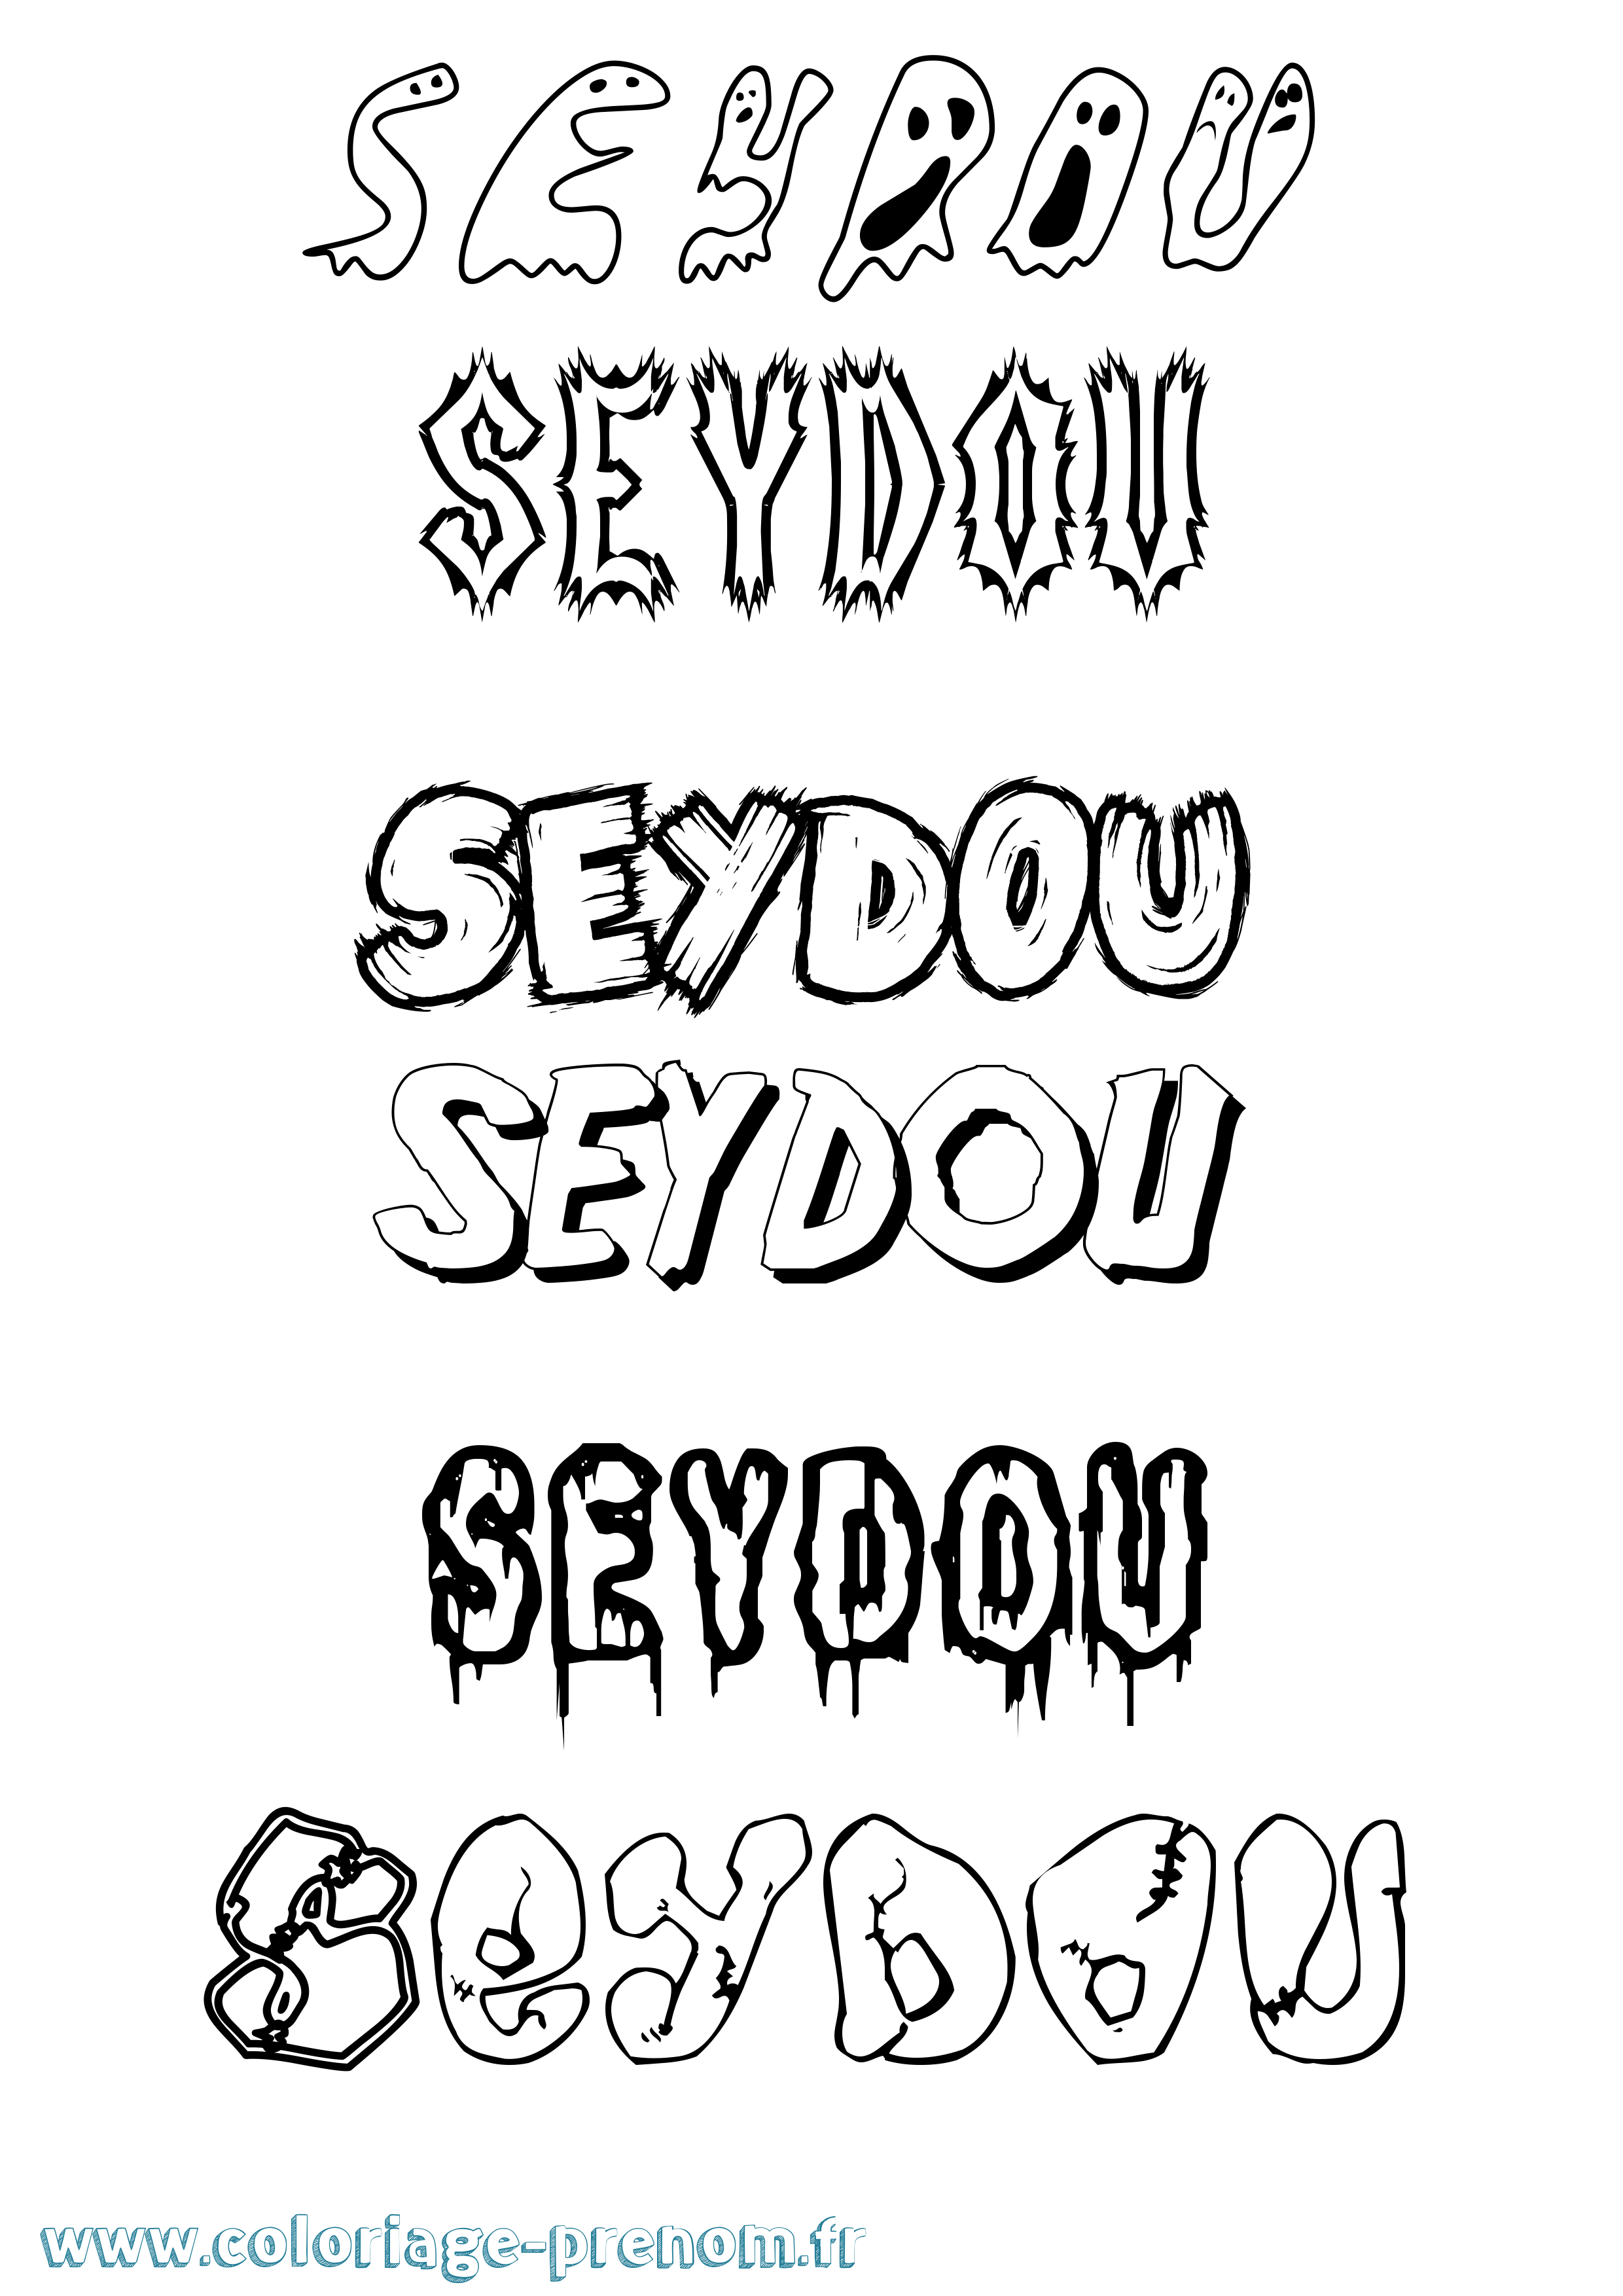 Coloriage prénom Seydou Frisson